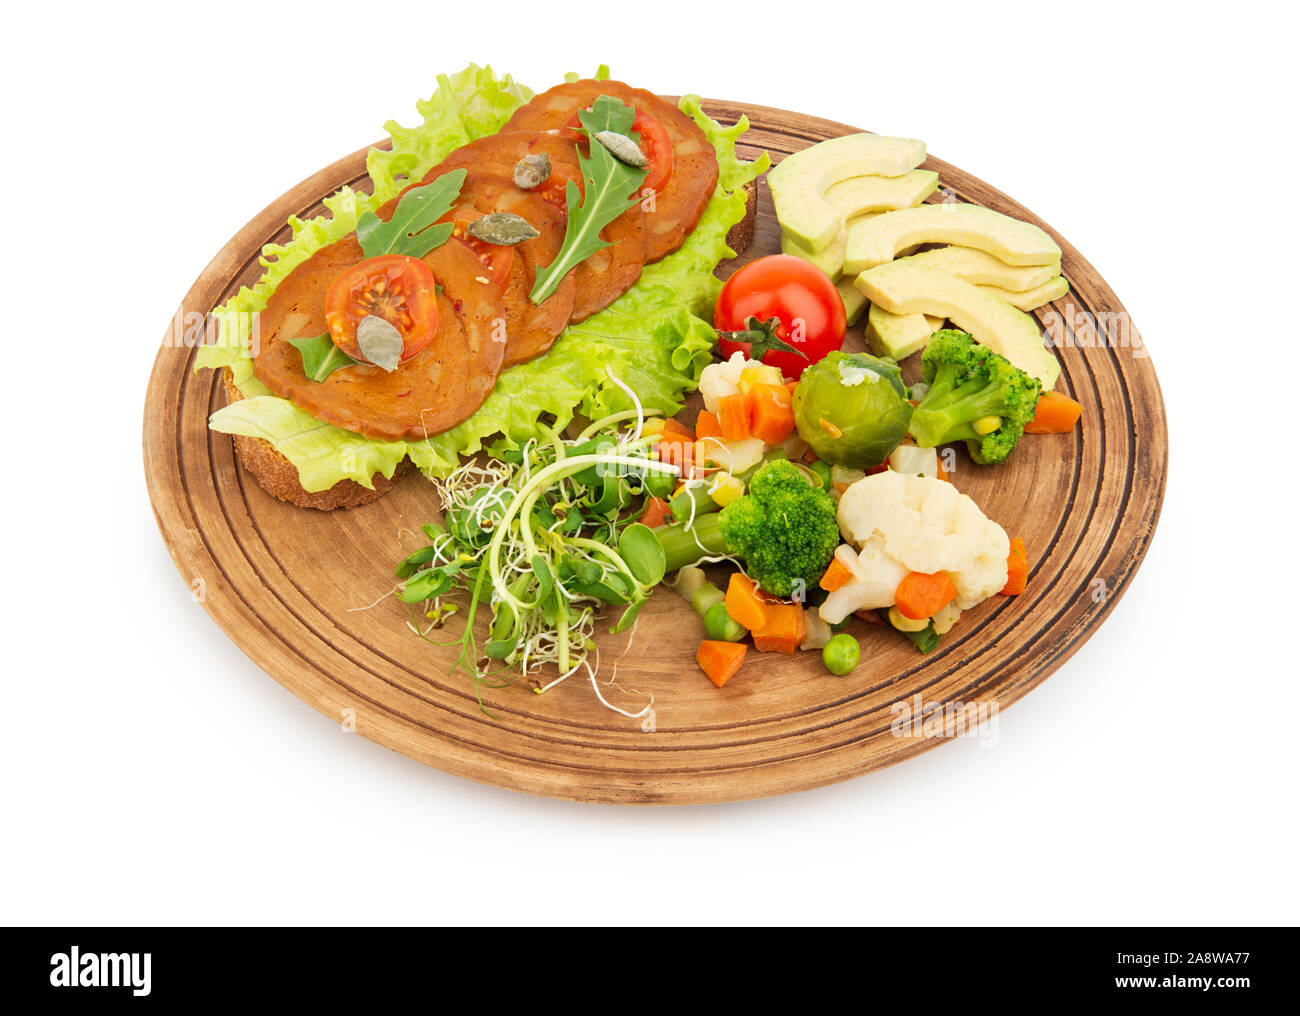 Le seitan et les légumes sandwich, Repas végétalien sain sur une assiette, isolé sur fond blanc avec ombre Banque D'Images